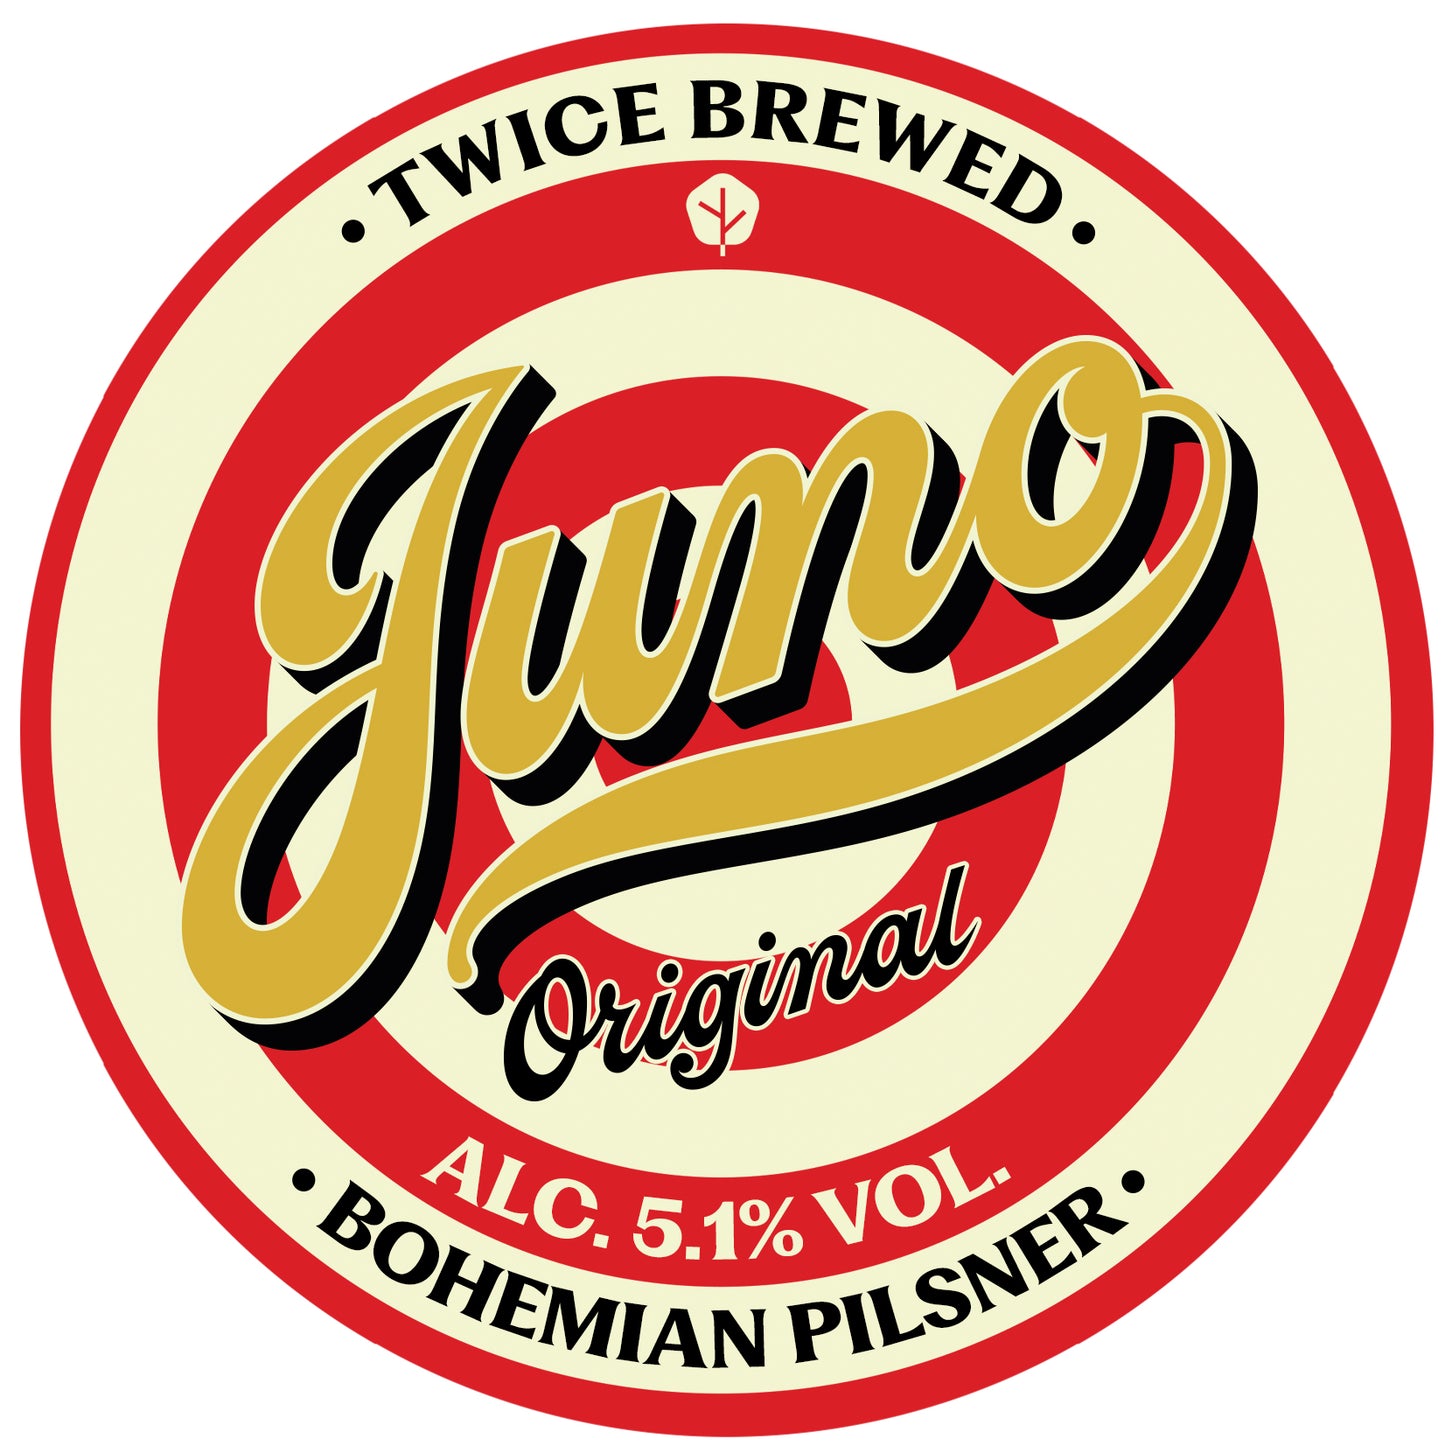 Juno Original, Bohemian Pilsner (GF), 5.1% - 440ml Can